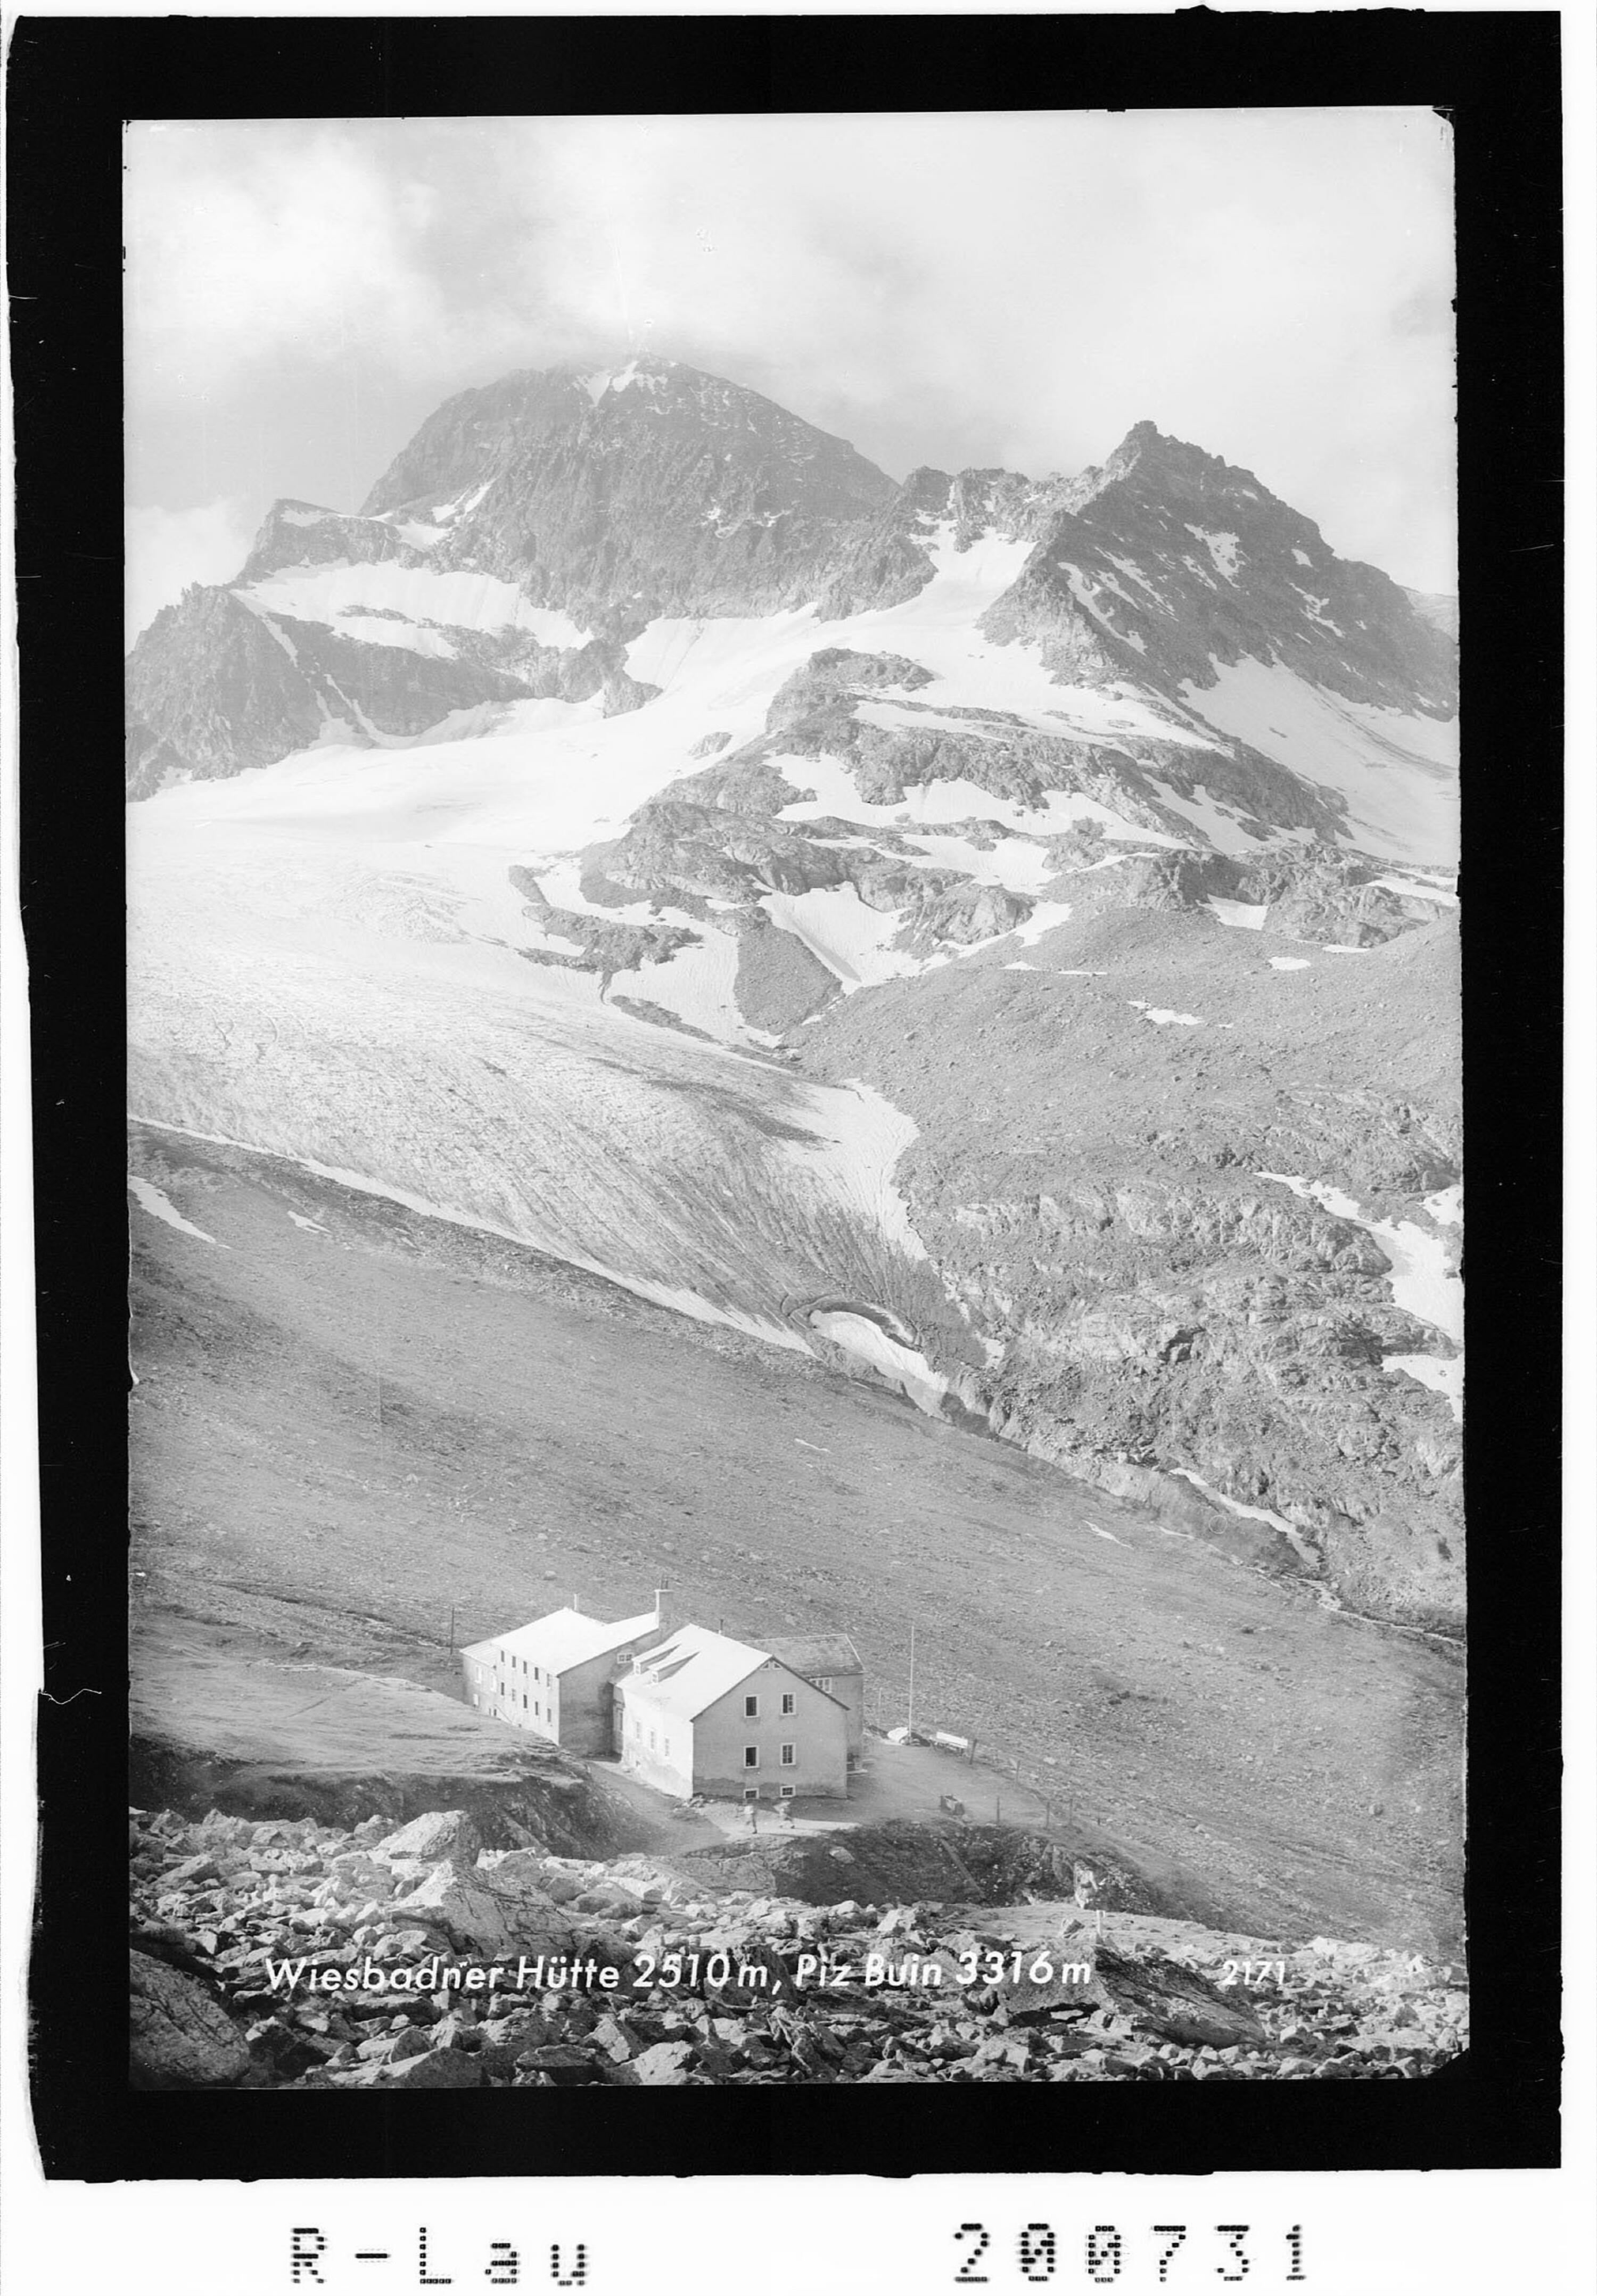 Wiesbadner-Hütte 2510 m, Piz Buin 3316 m></div>


    <hr>
    <div class=